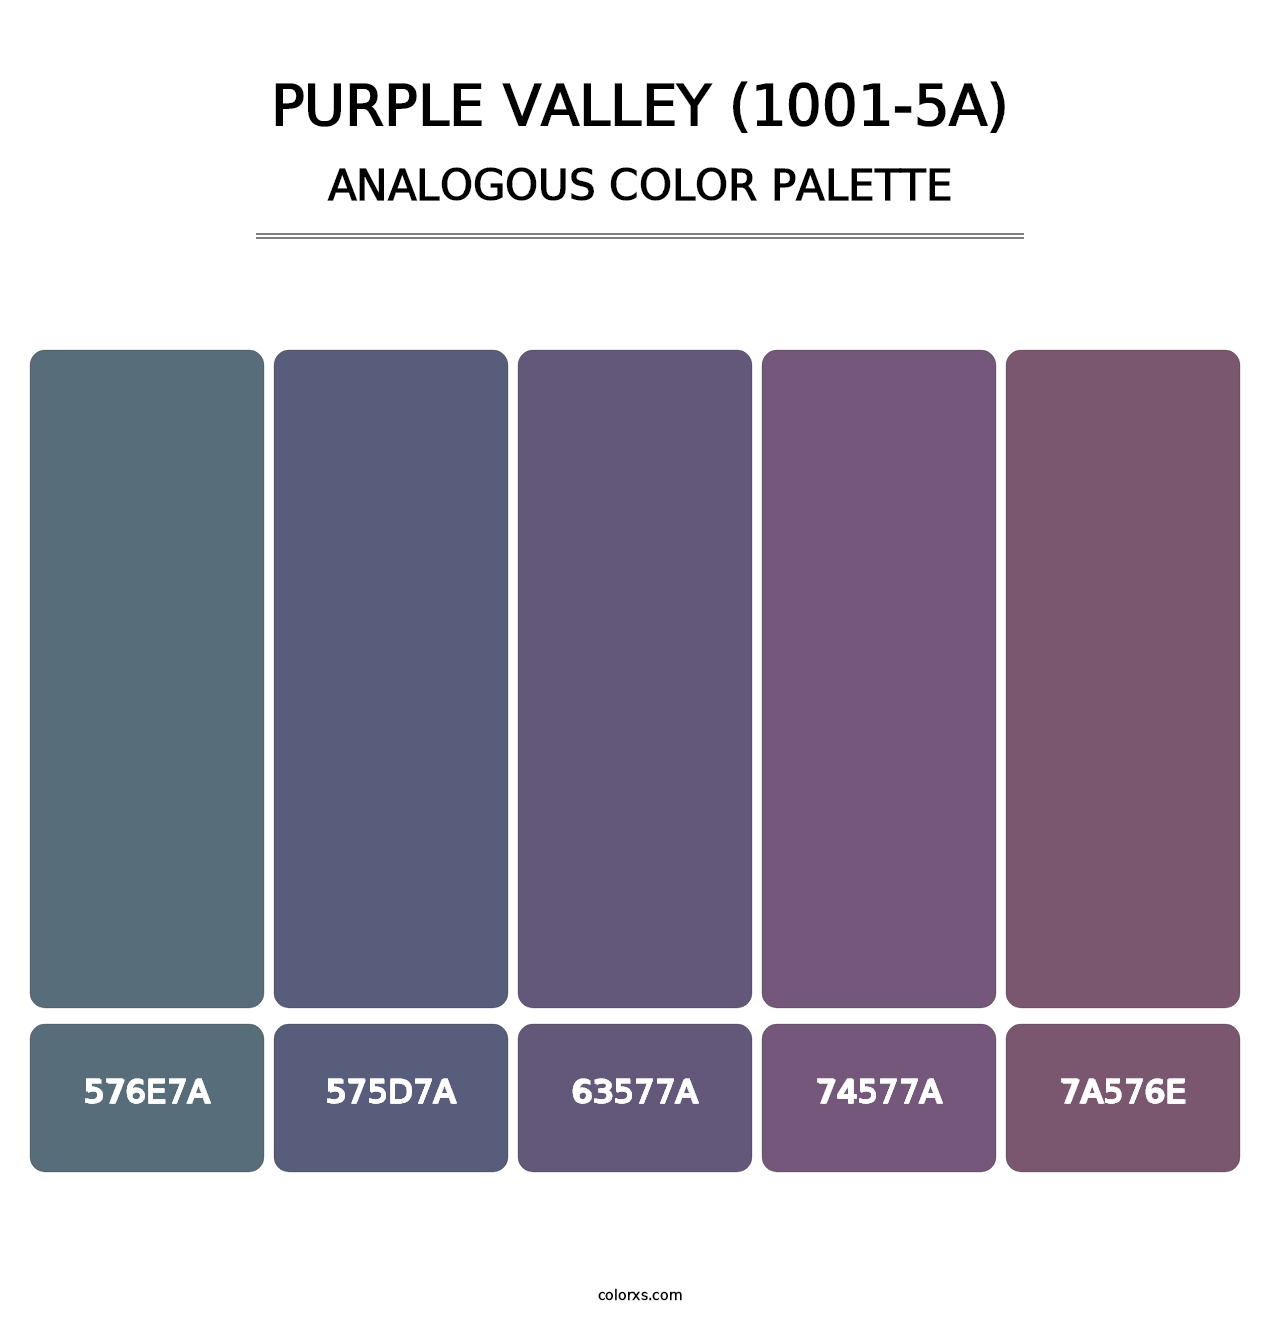 Purple Valley (1001-5A) - Analogous Color Palette